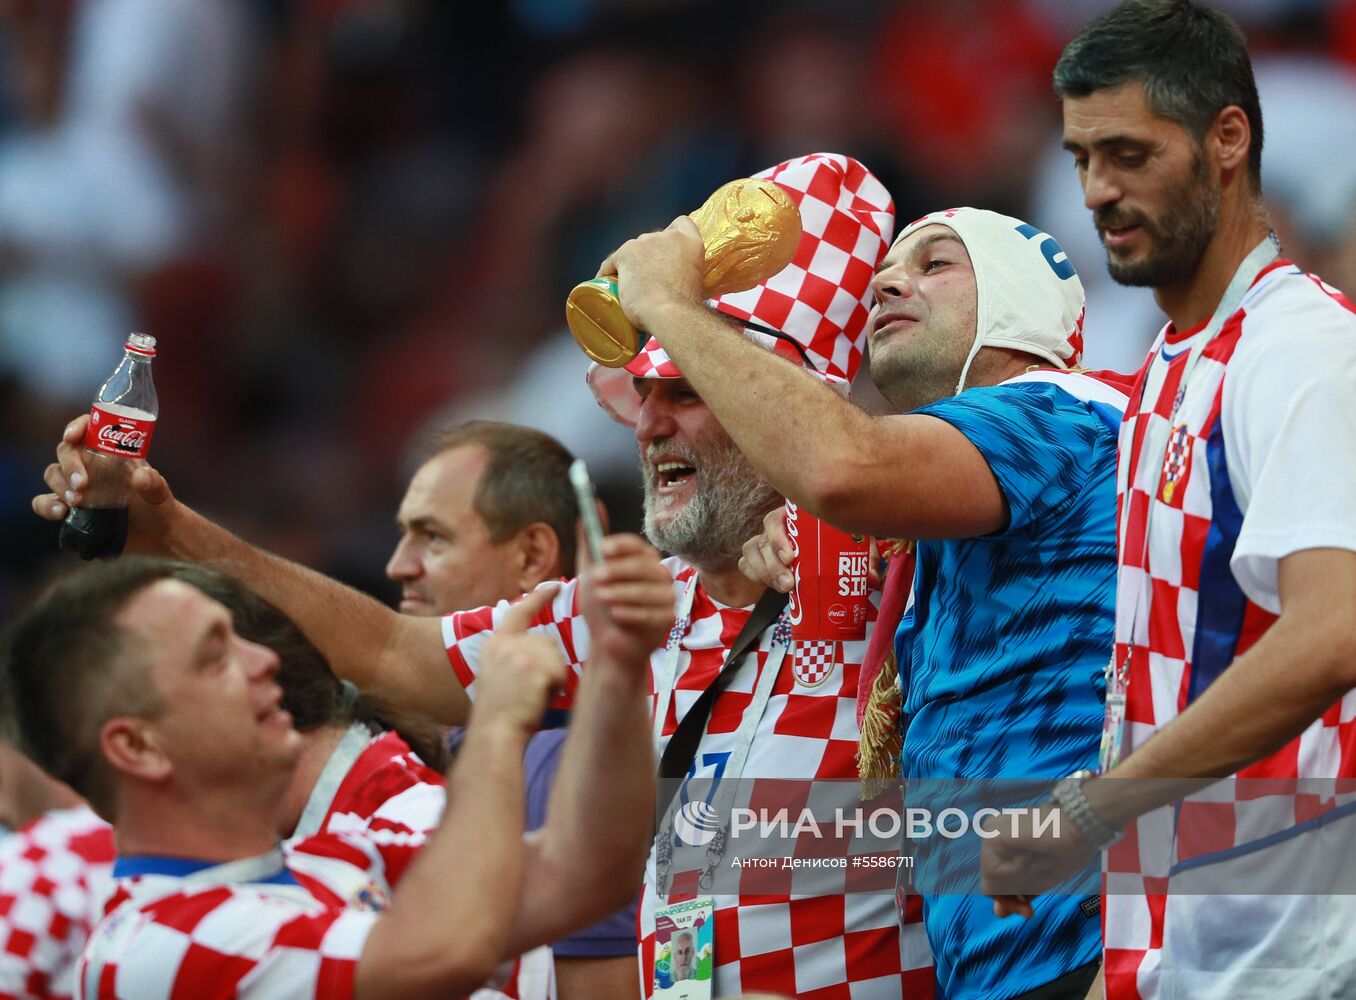 Болельщики перед матчем ЧМ-2018 по футболу между сборными Хорватии и Англии